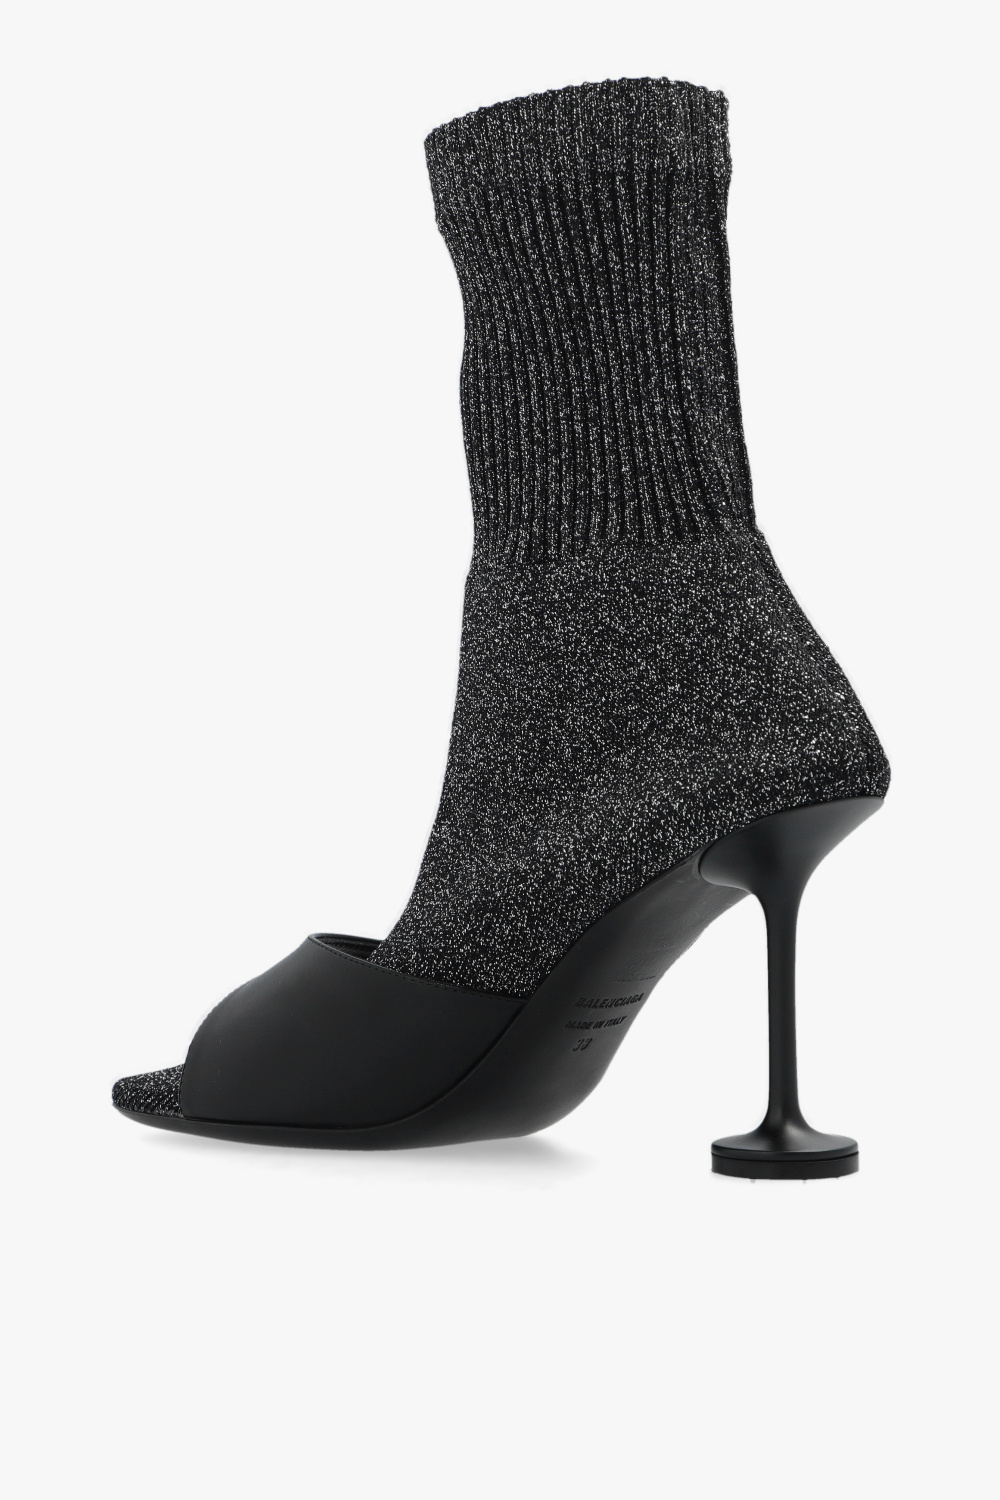 Balenciaga ‘Sock’ pumps